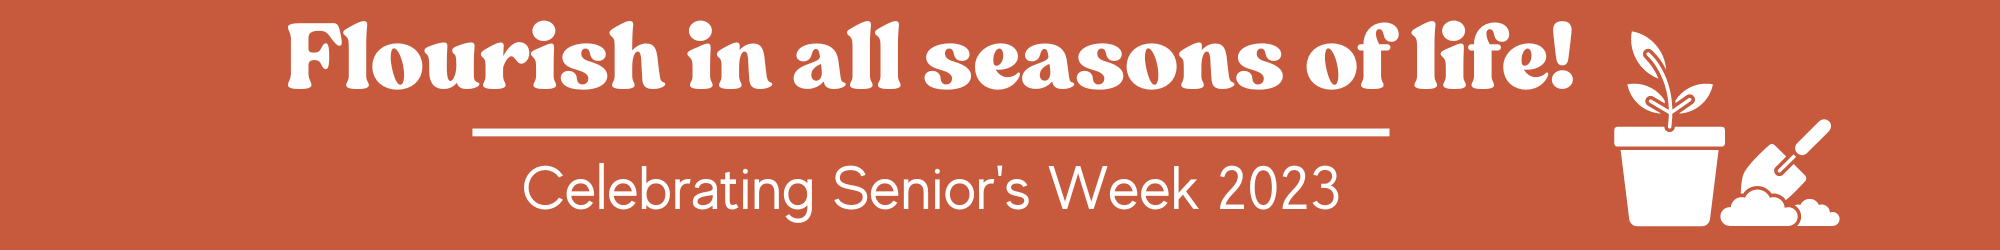 Senior's Week Logo for website